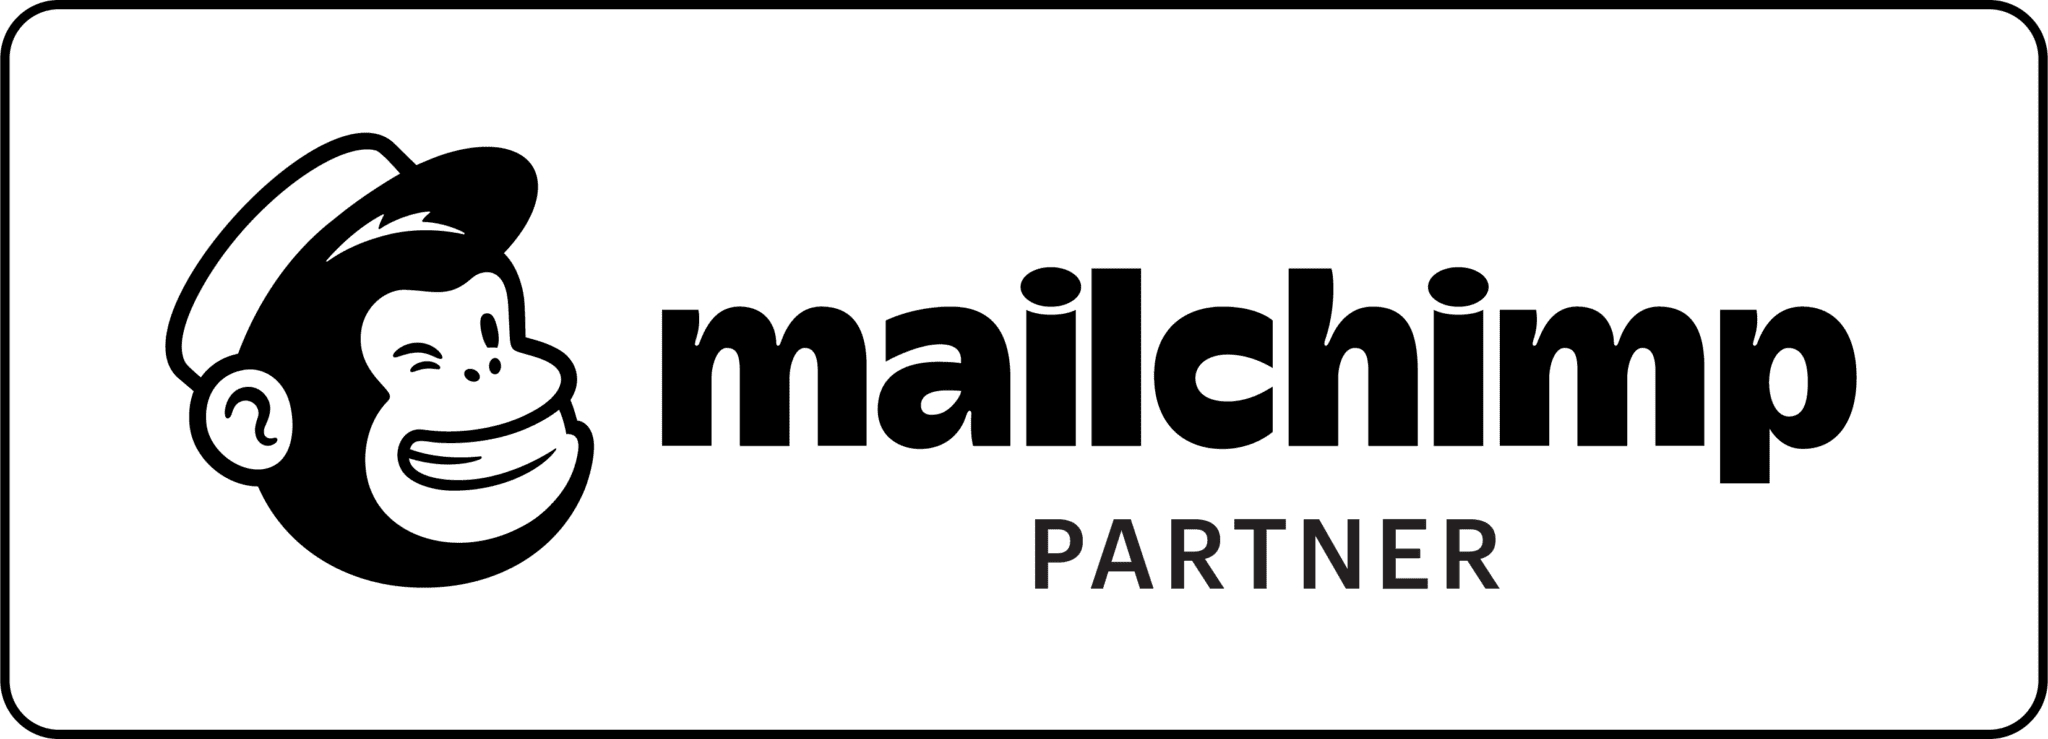 Mailchimp Partner logo